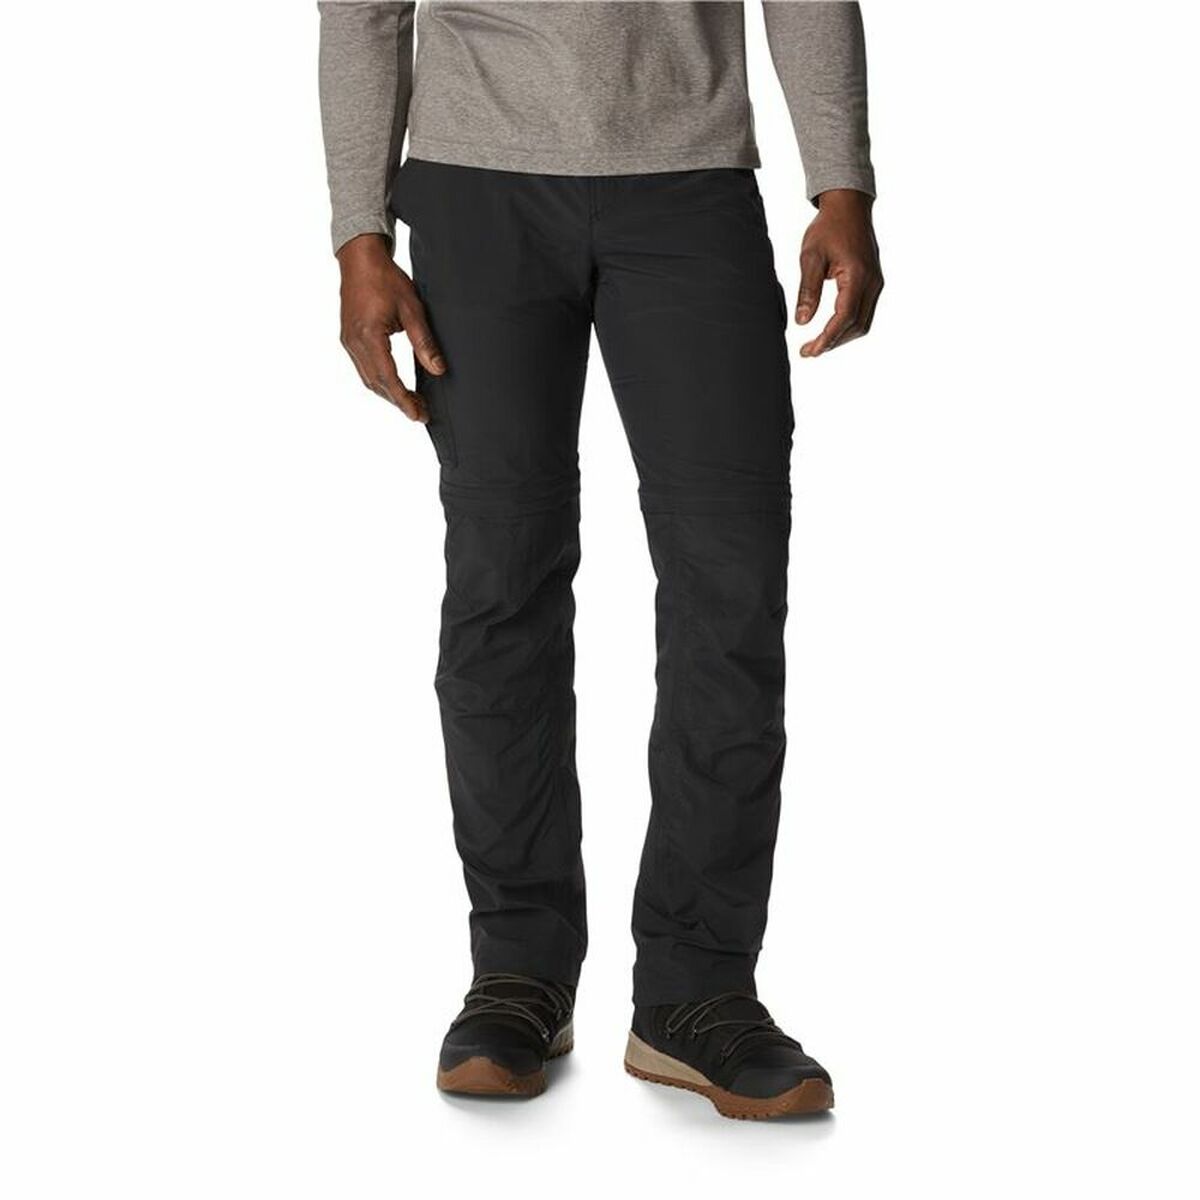 Pantalones Cortos Deportivos para Hombre Columbia Silver Ridge Convertible Negro Hombre